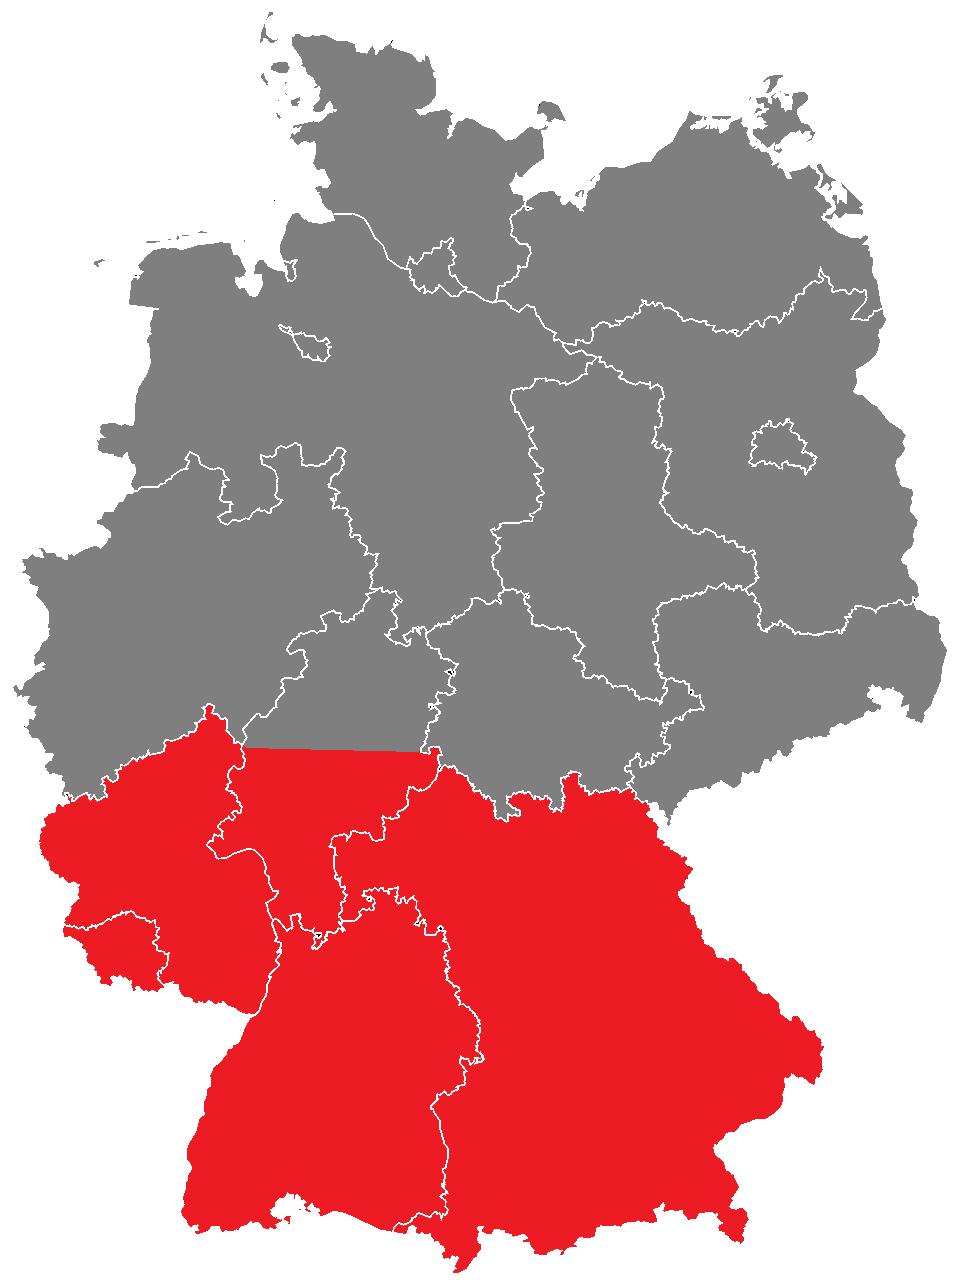 Übertragungskapazitäten Stromlücke Süddeutschland Kraftwerks-Kapazitäten (in GW) Süddeutschland Bayern, Baden-Württemberg, Hessen, Saarland, Rheinland-Pfalz 2017 2025 Netto Kraftwerksleistung davon